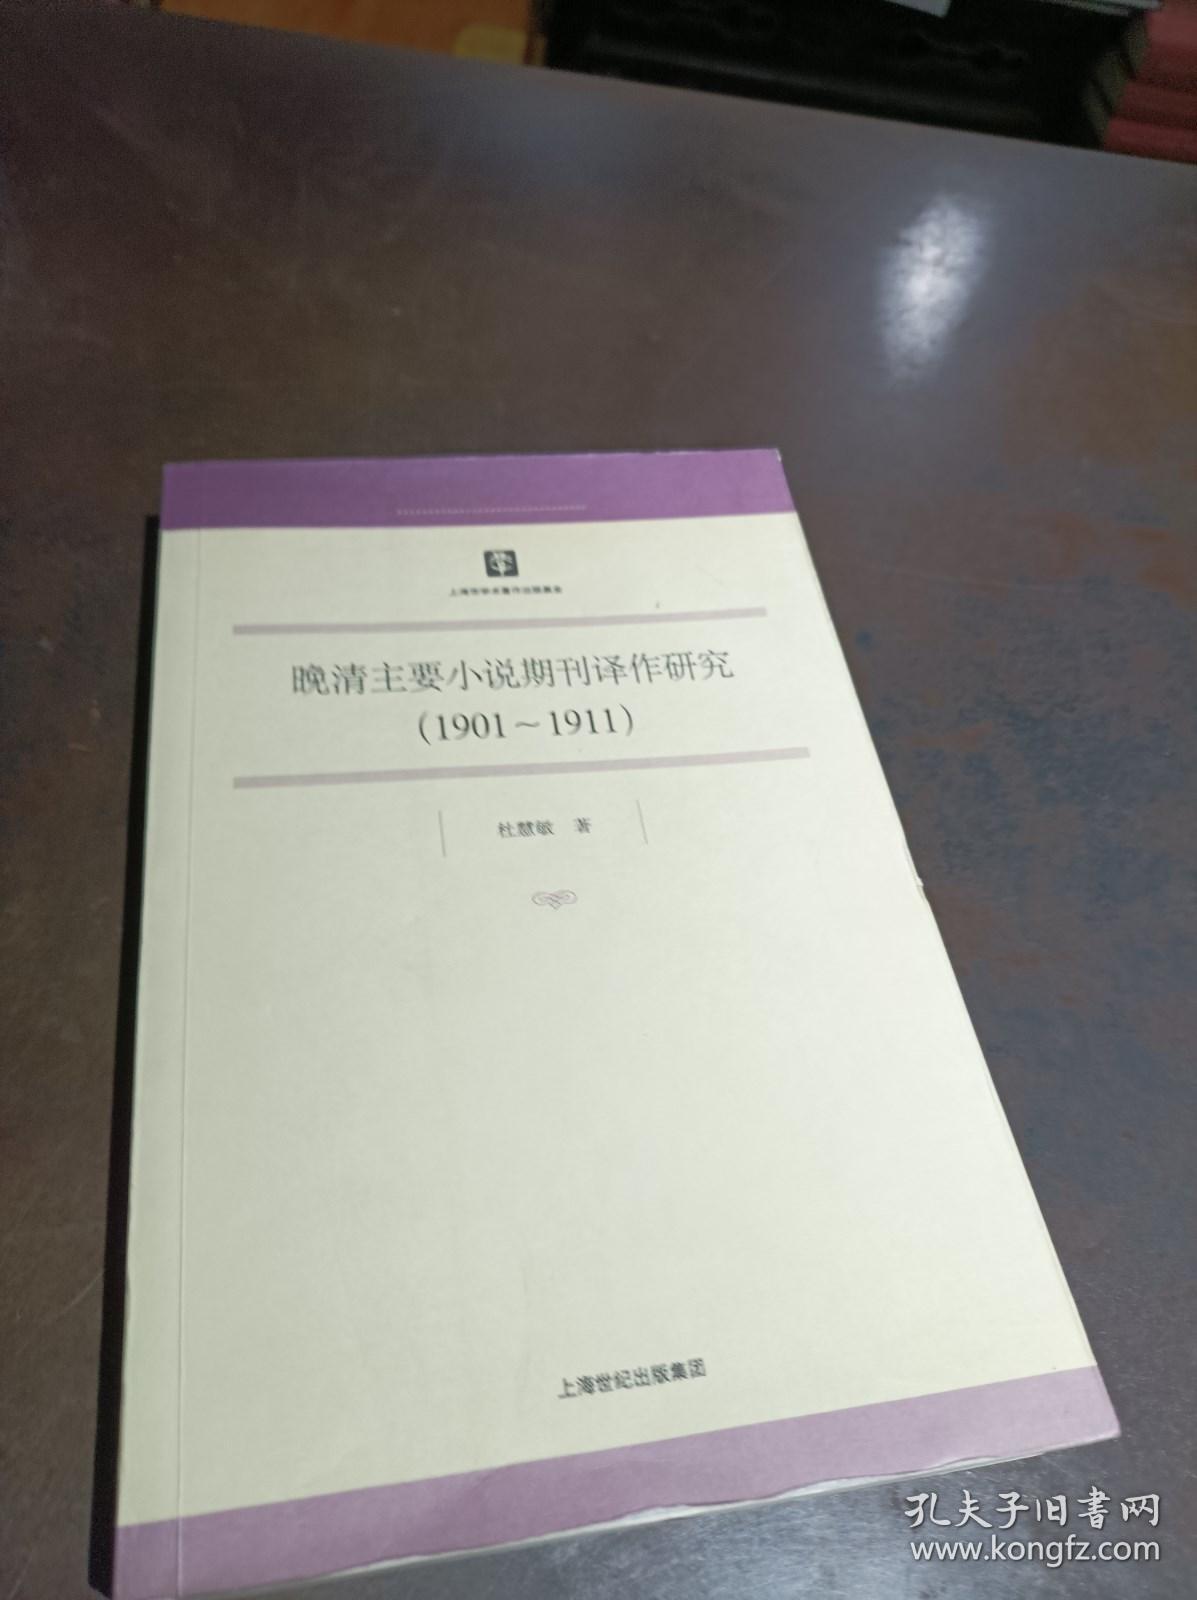 晚清主要小说期刊译作研究（1901-1911）